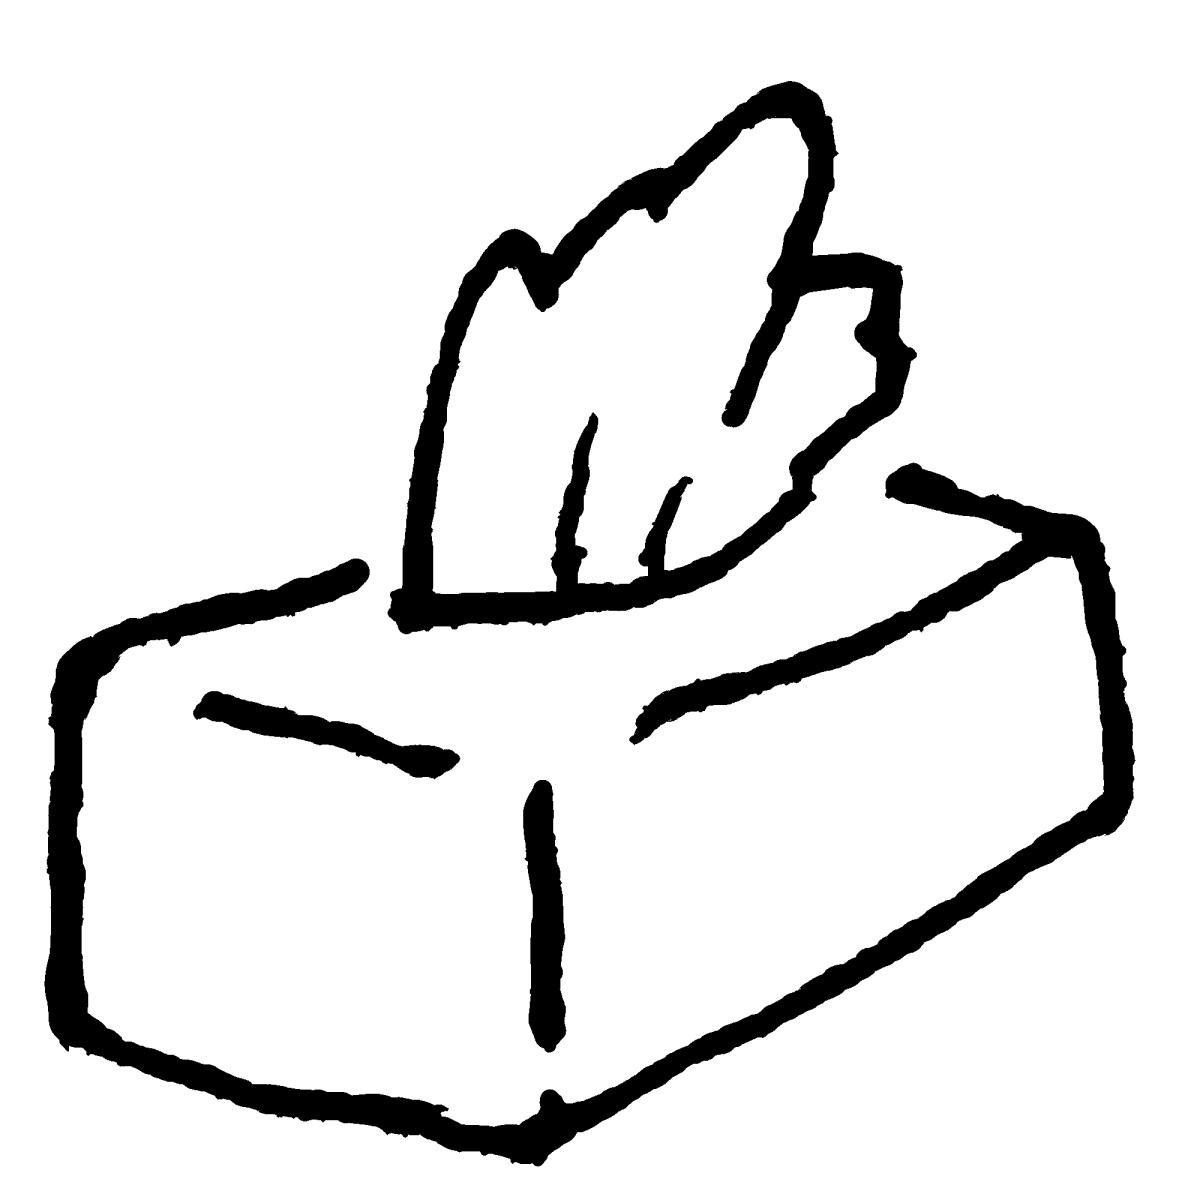 ボックスティッシュのイラスト / Box tissue Illustration